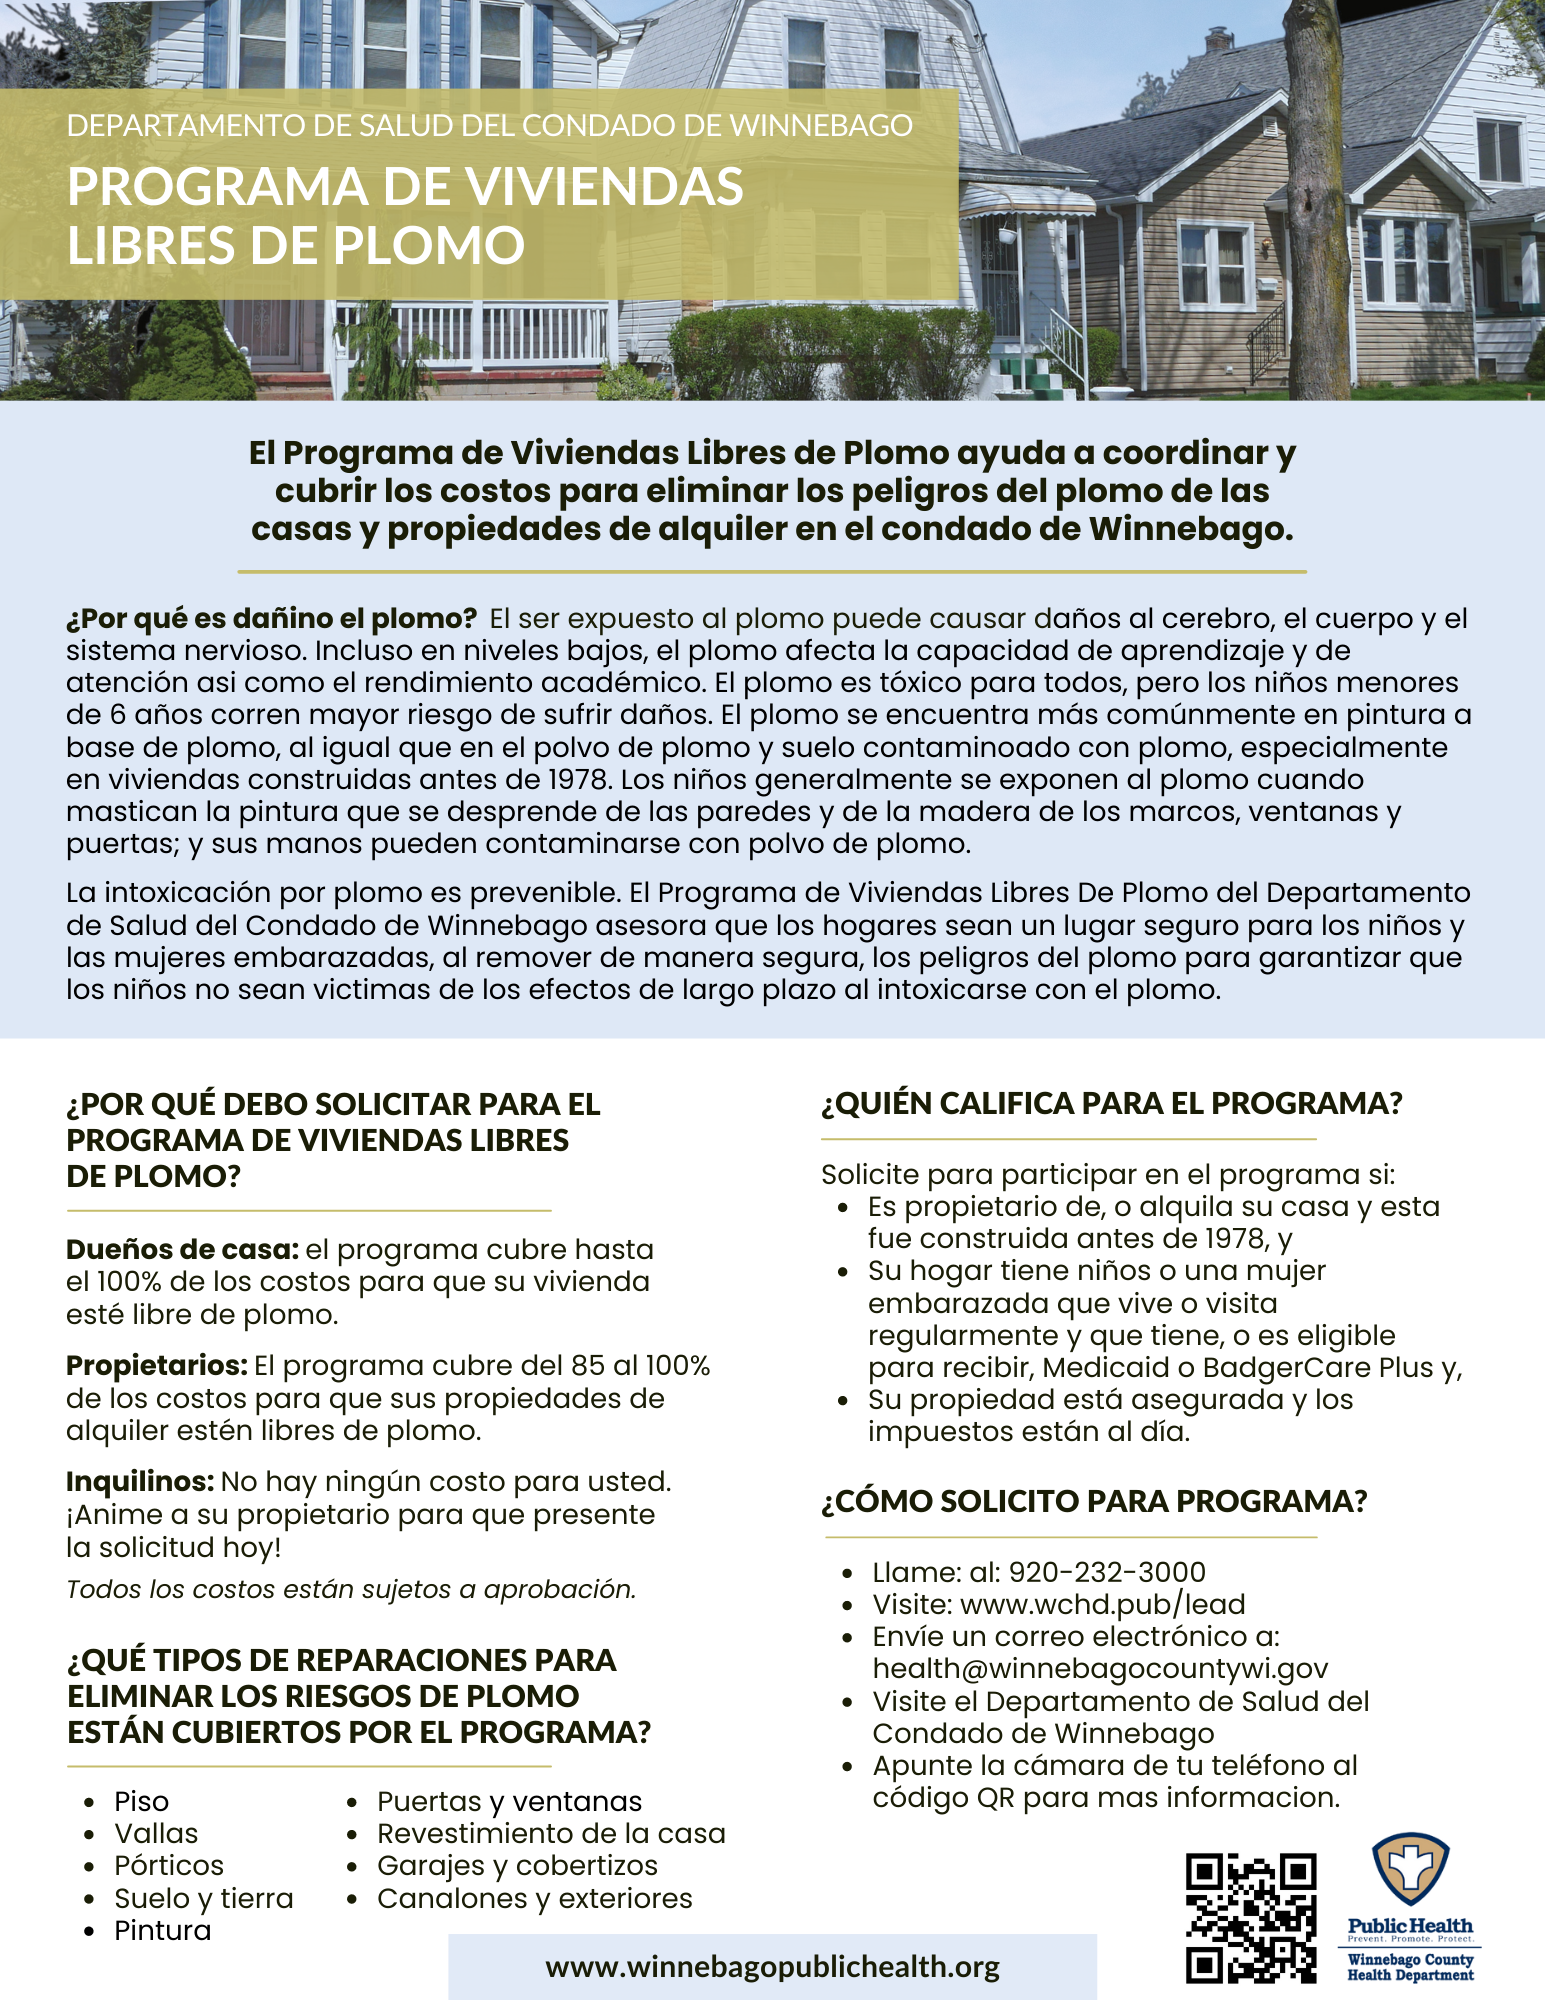 Lead-Safe Homes Program Flyer